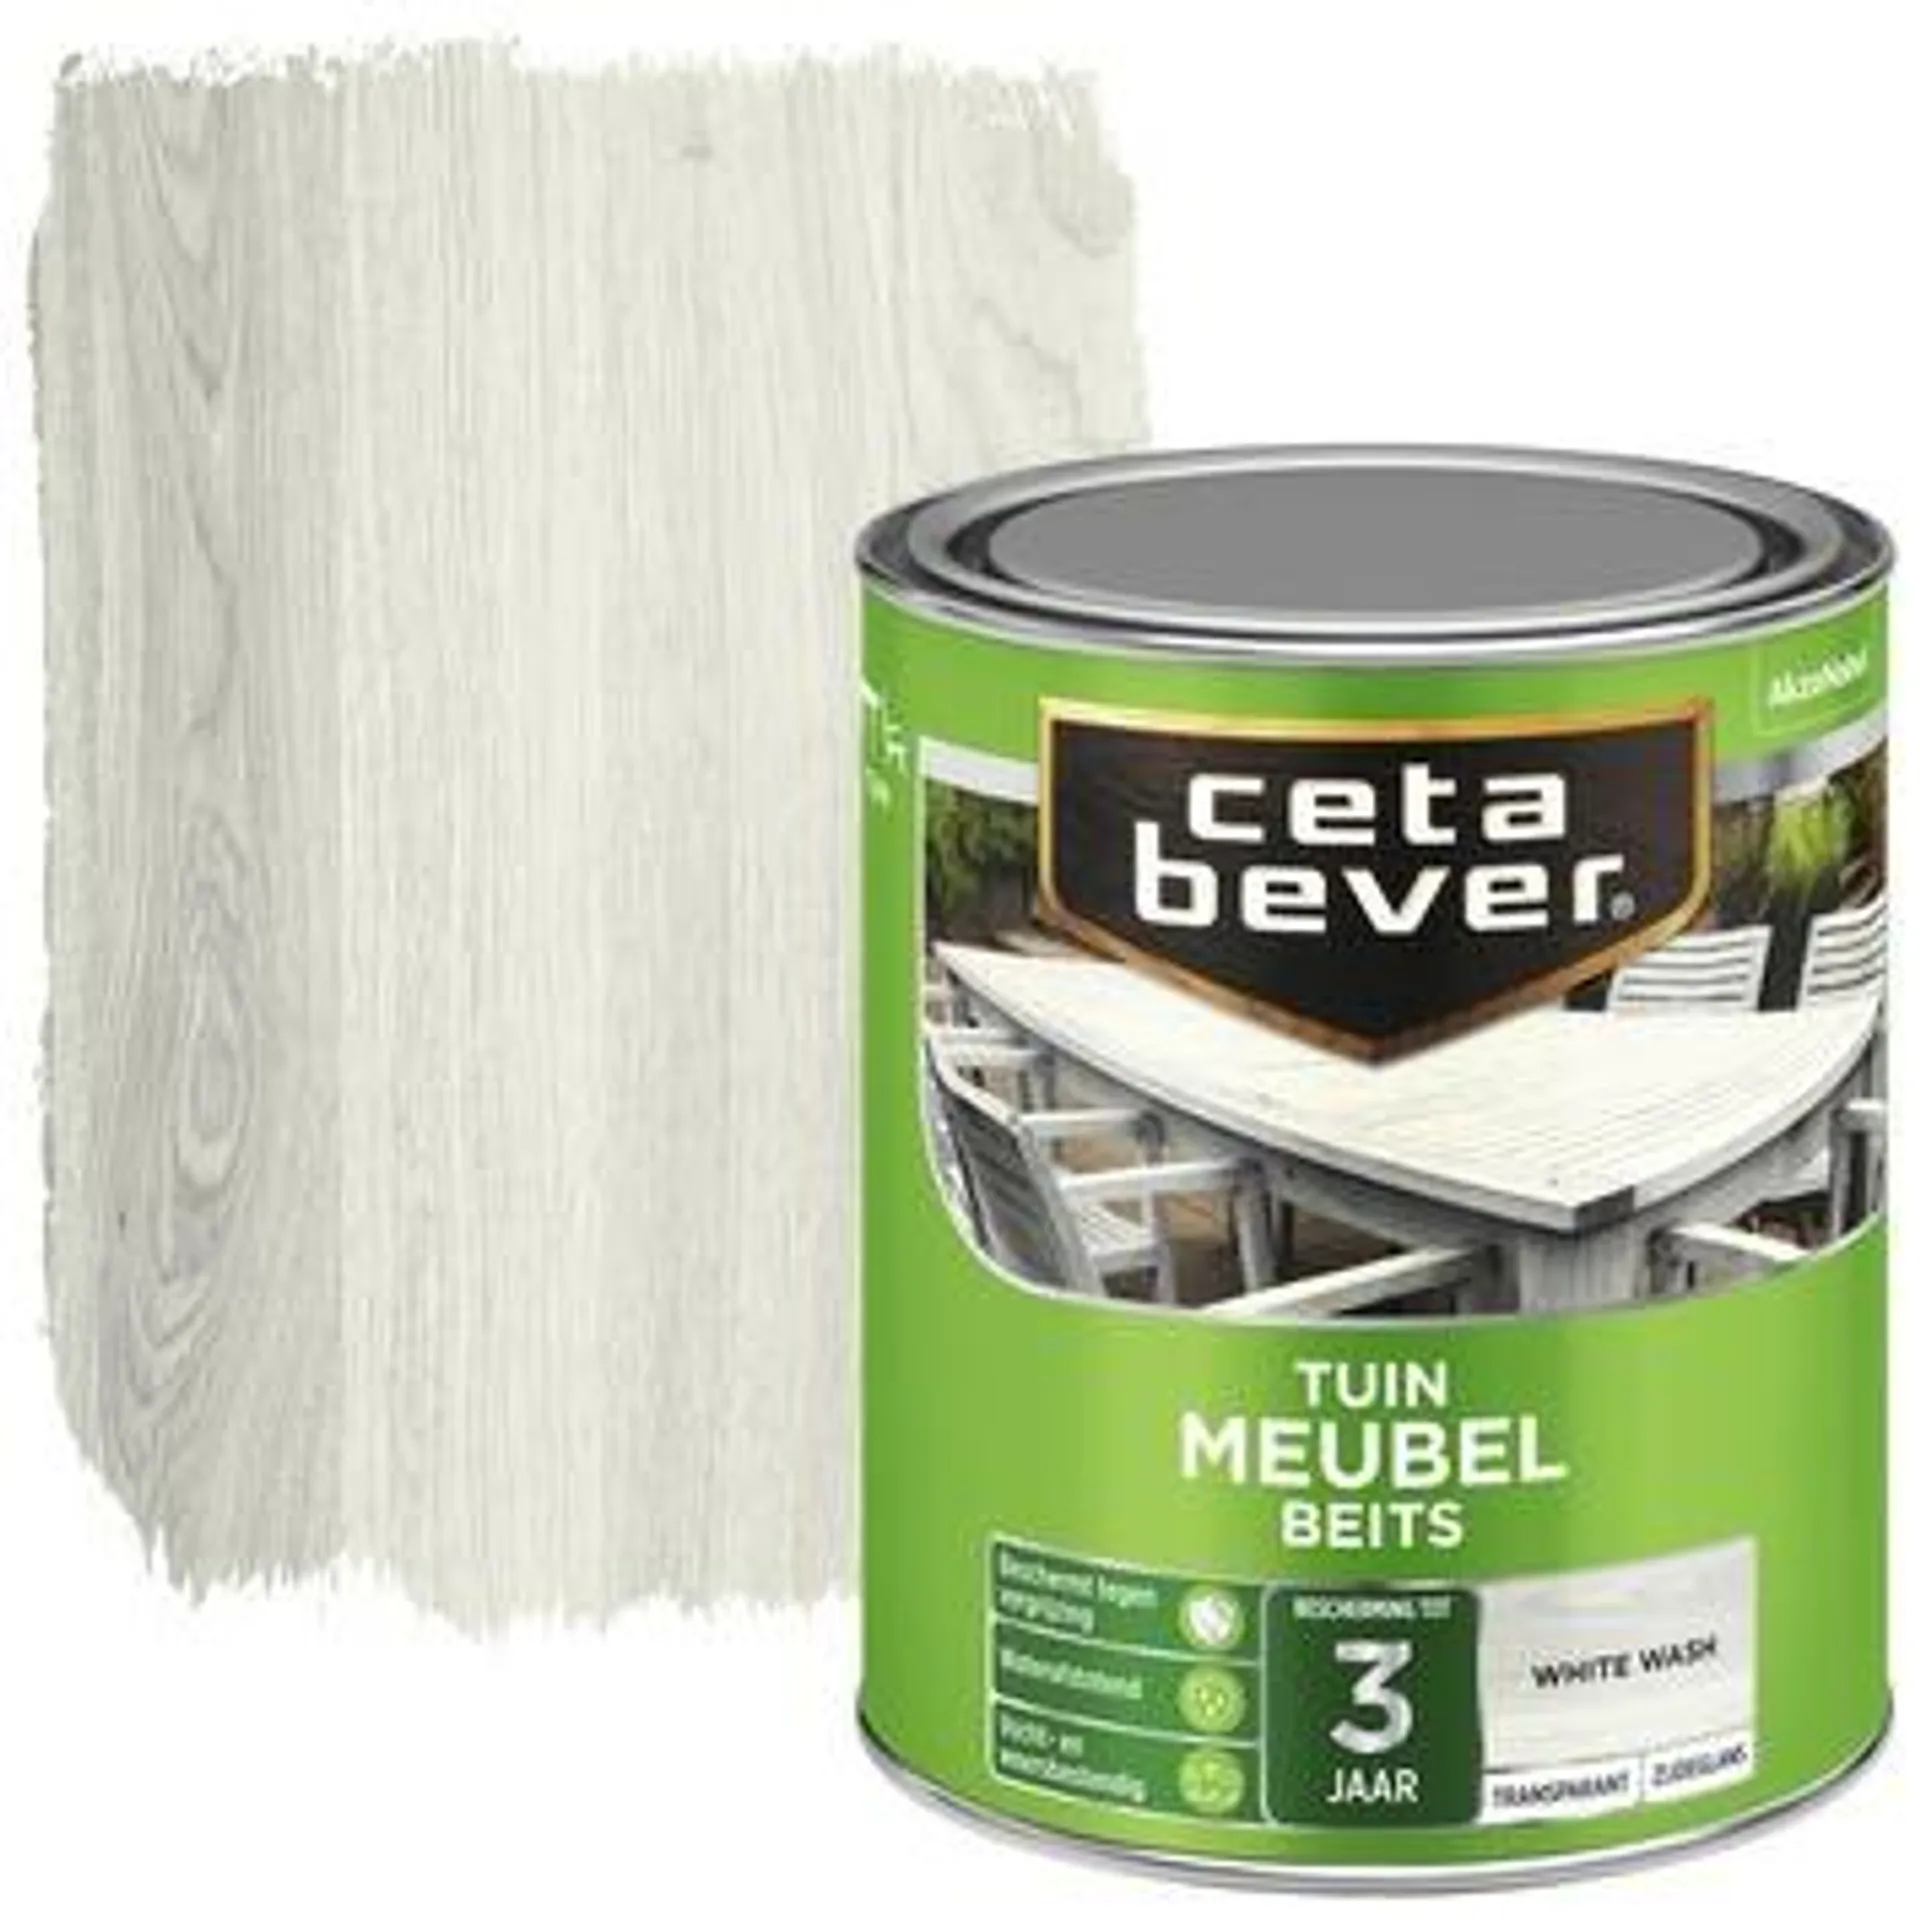 Cetabever tuinmeubelbeits transparant white wash zijdeglans 750 ml